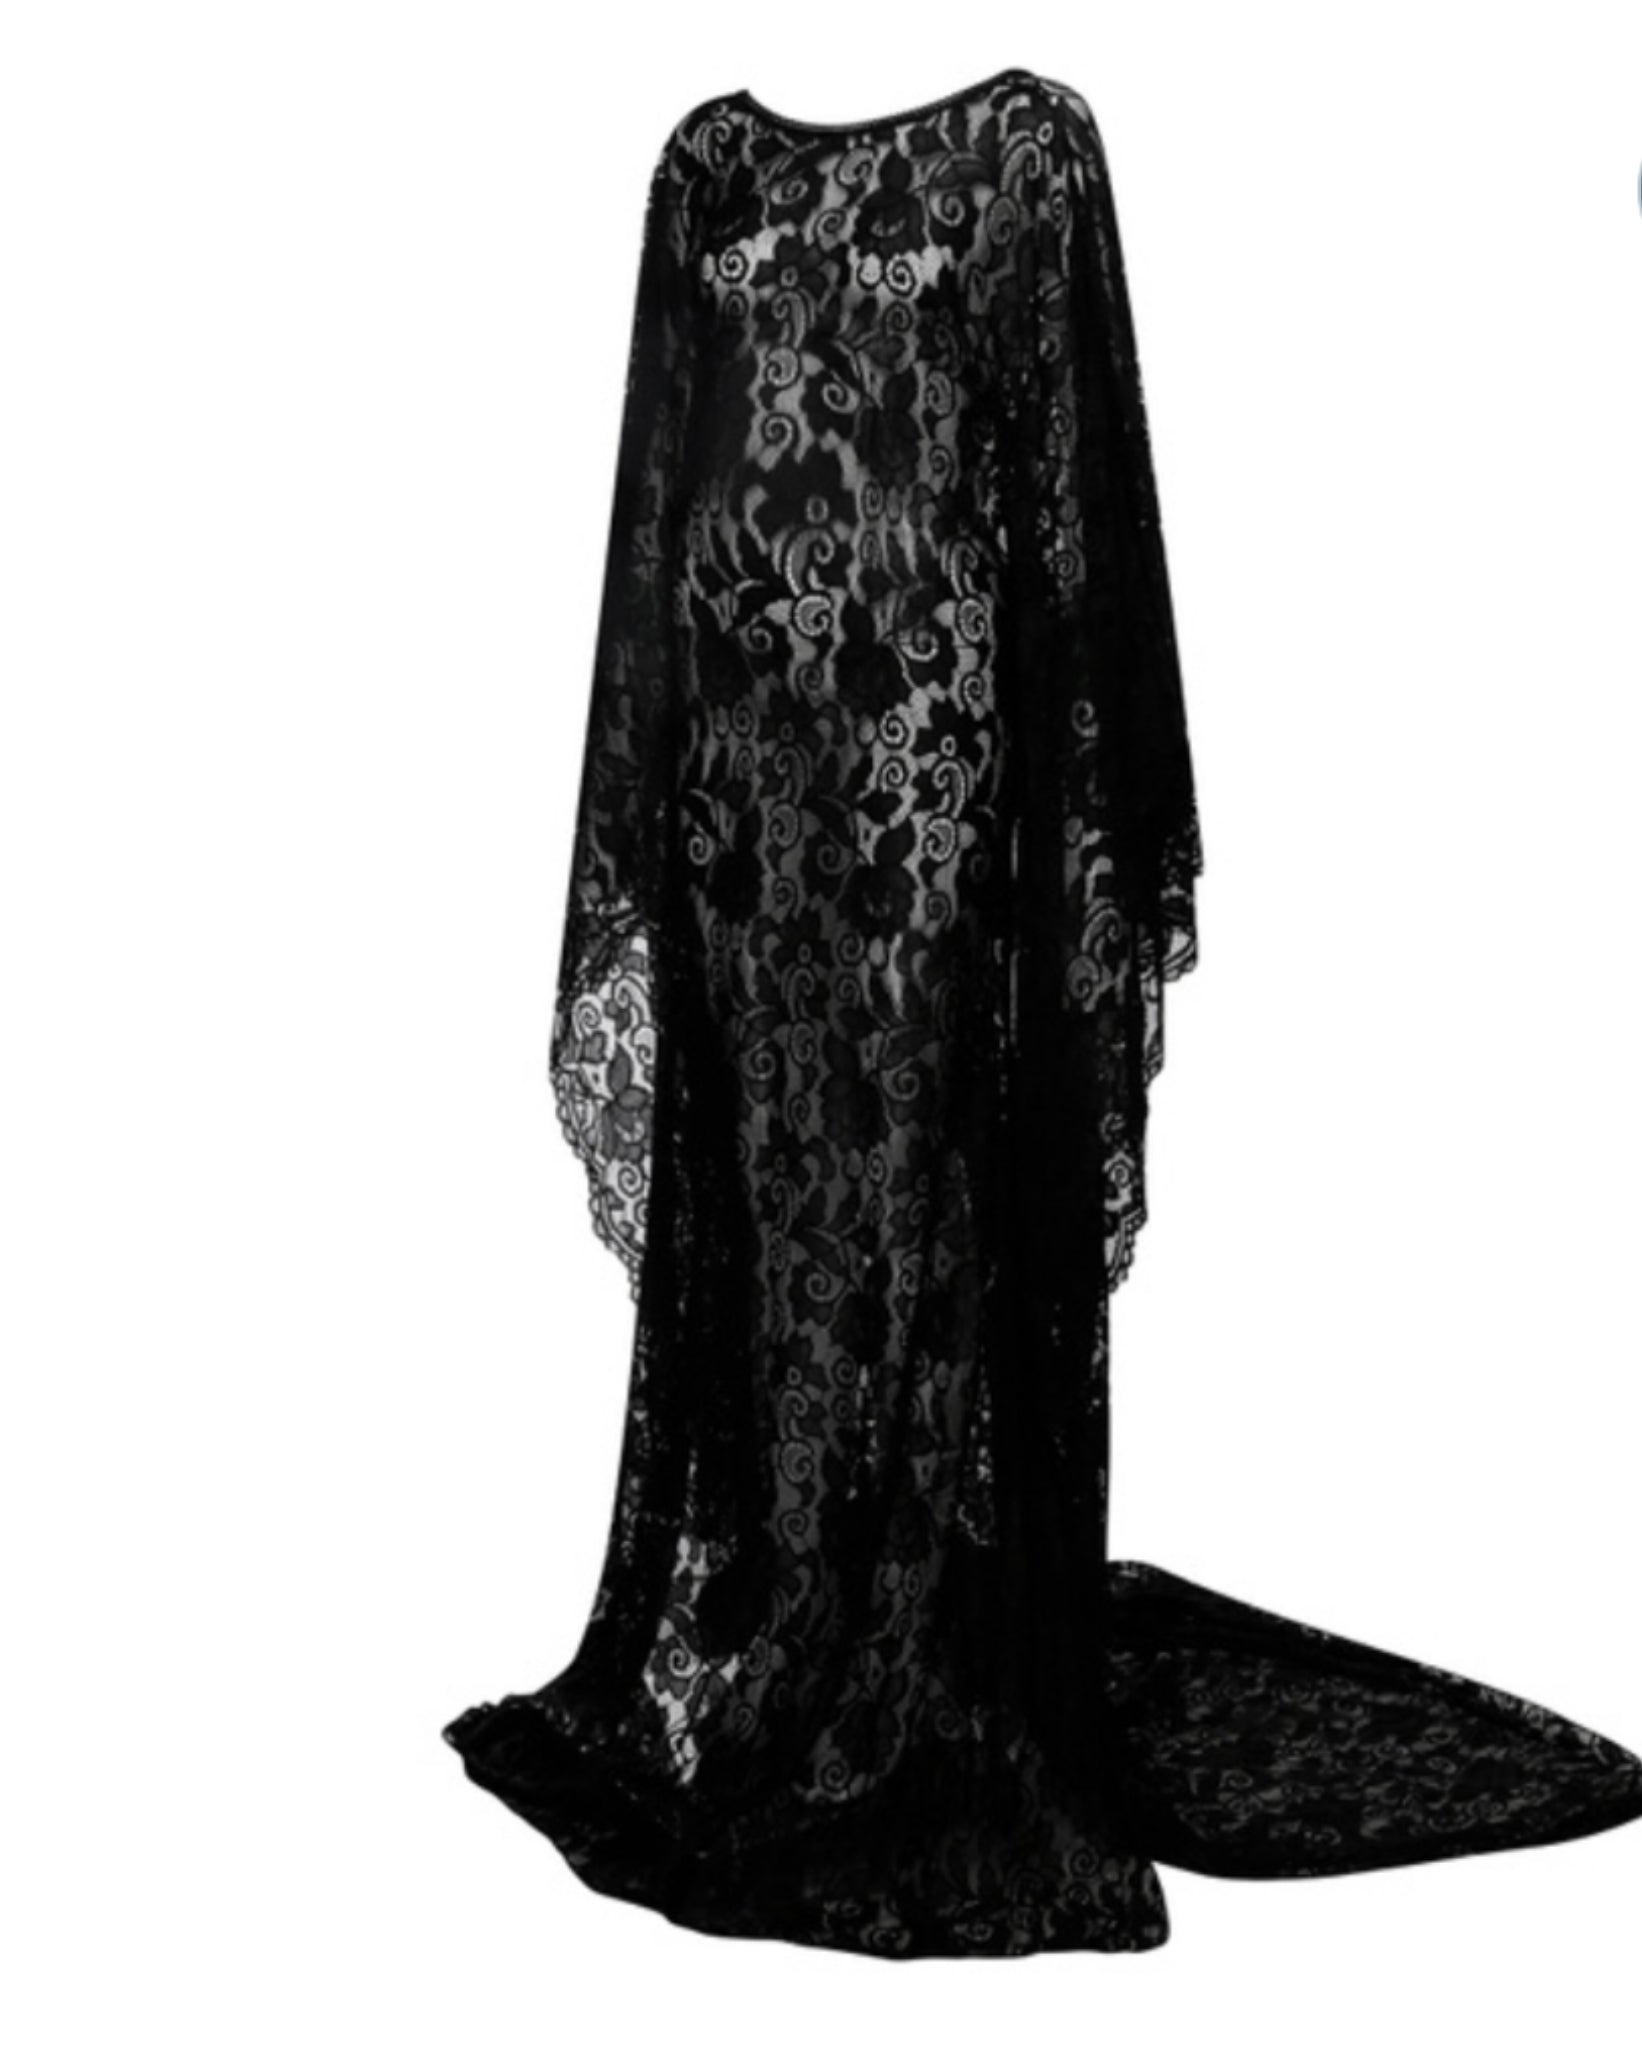 Hadley Black Lace Maternity Dress Split Side Bell Sleeve Gown